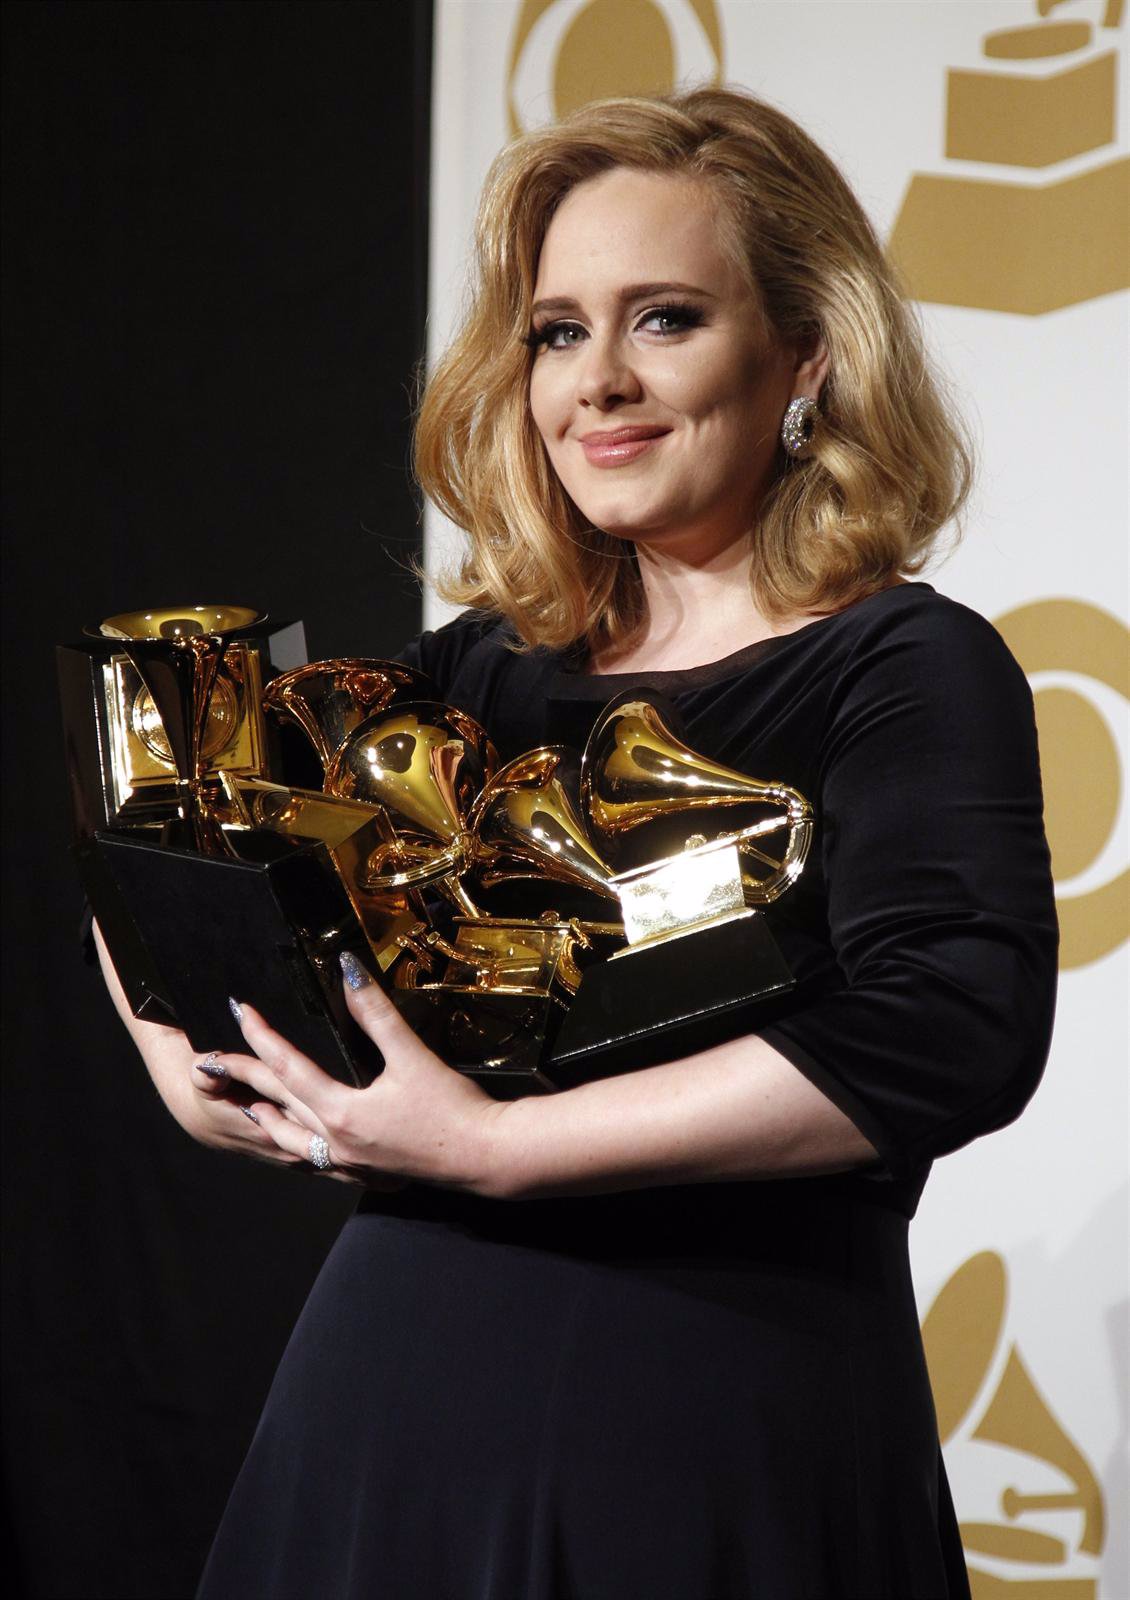 Adele Triunfa En La Ceremonia De Los Grammy